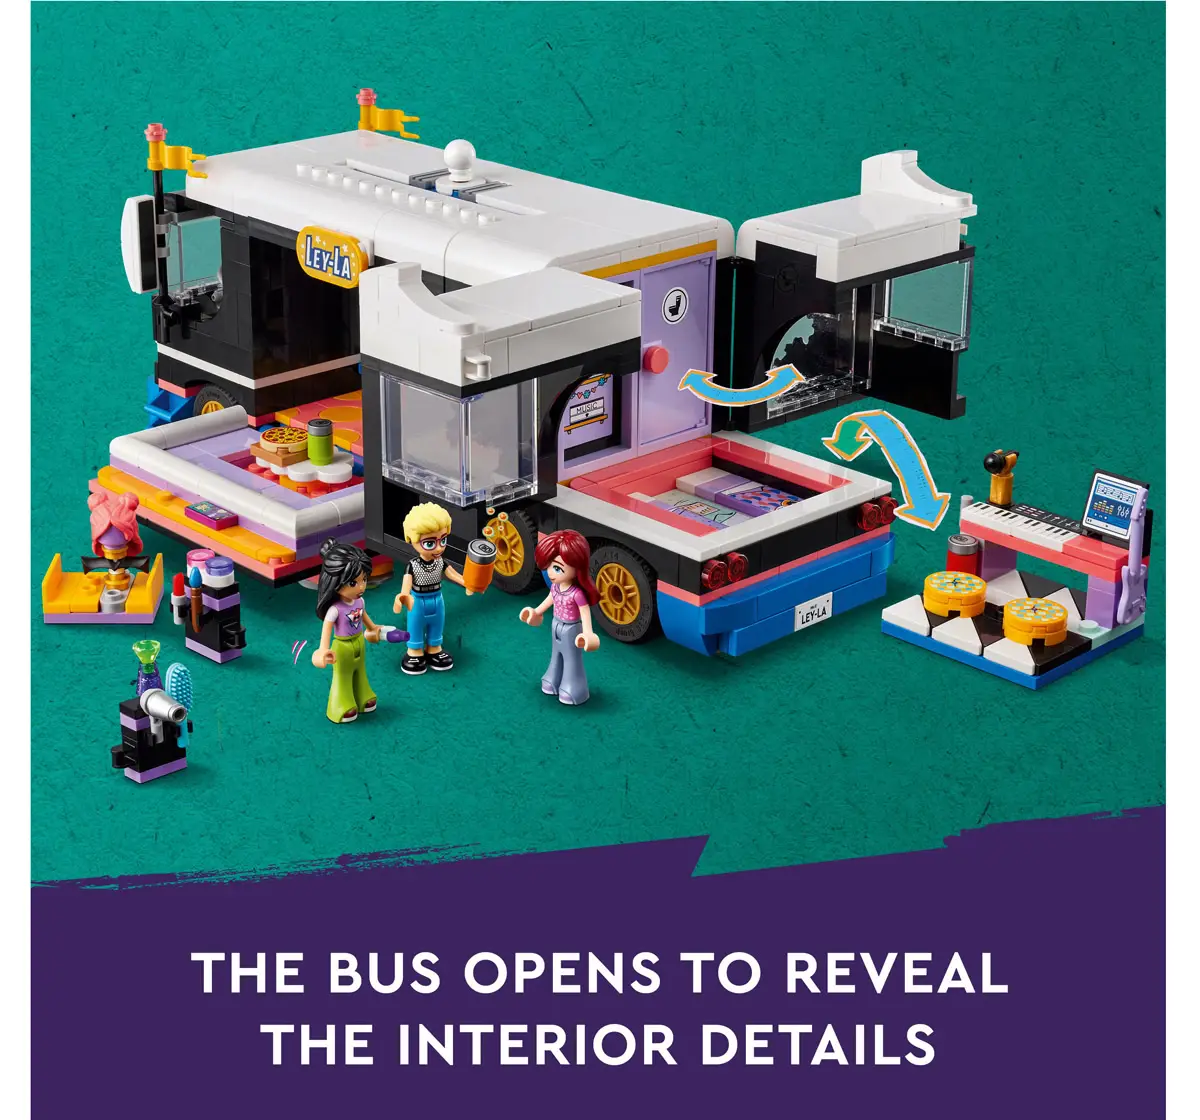 Lego Friends Pop Star Music Tour Bus Toy 42619 Multicolour For Kids Ages 8Y+ (845 Pieces) 